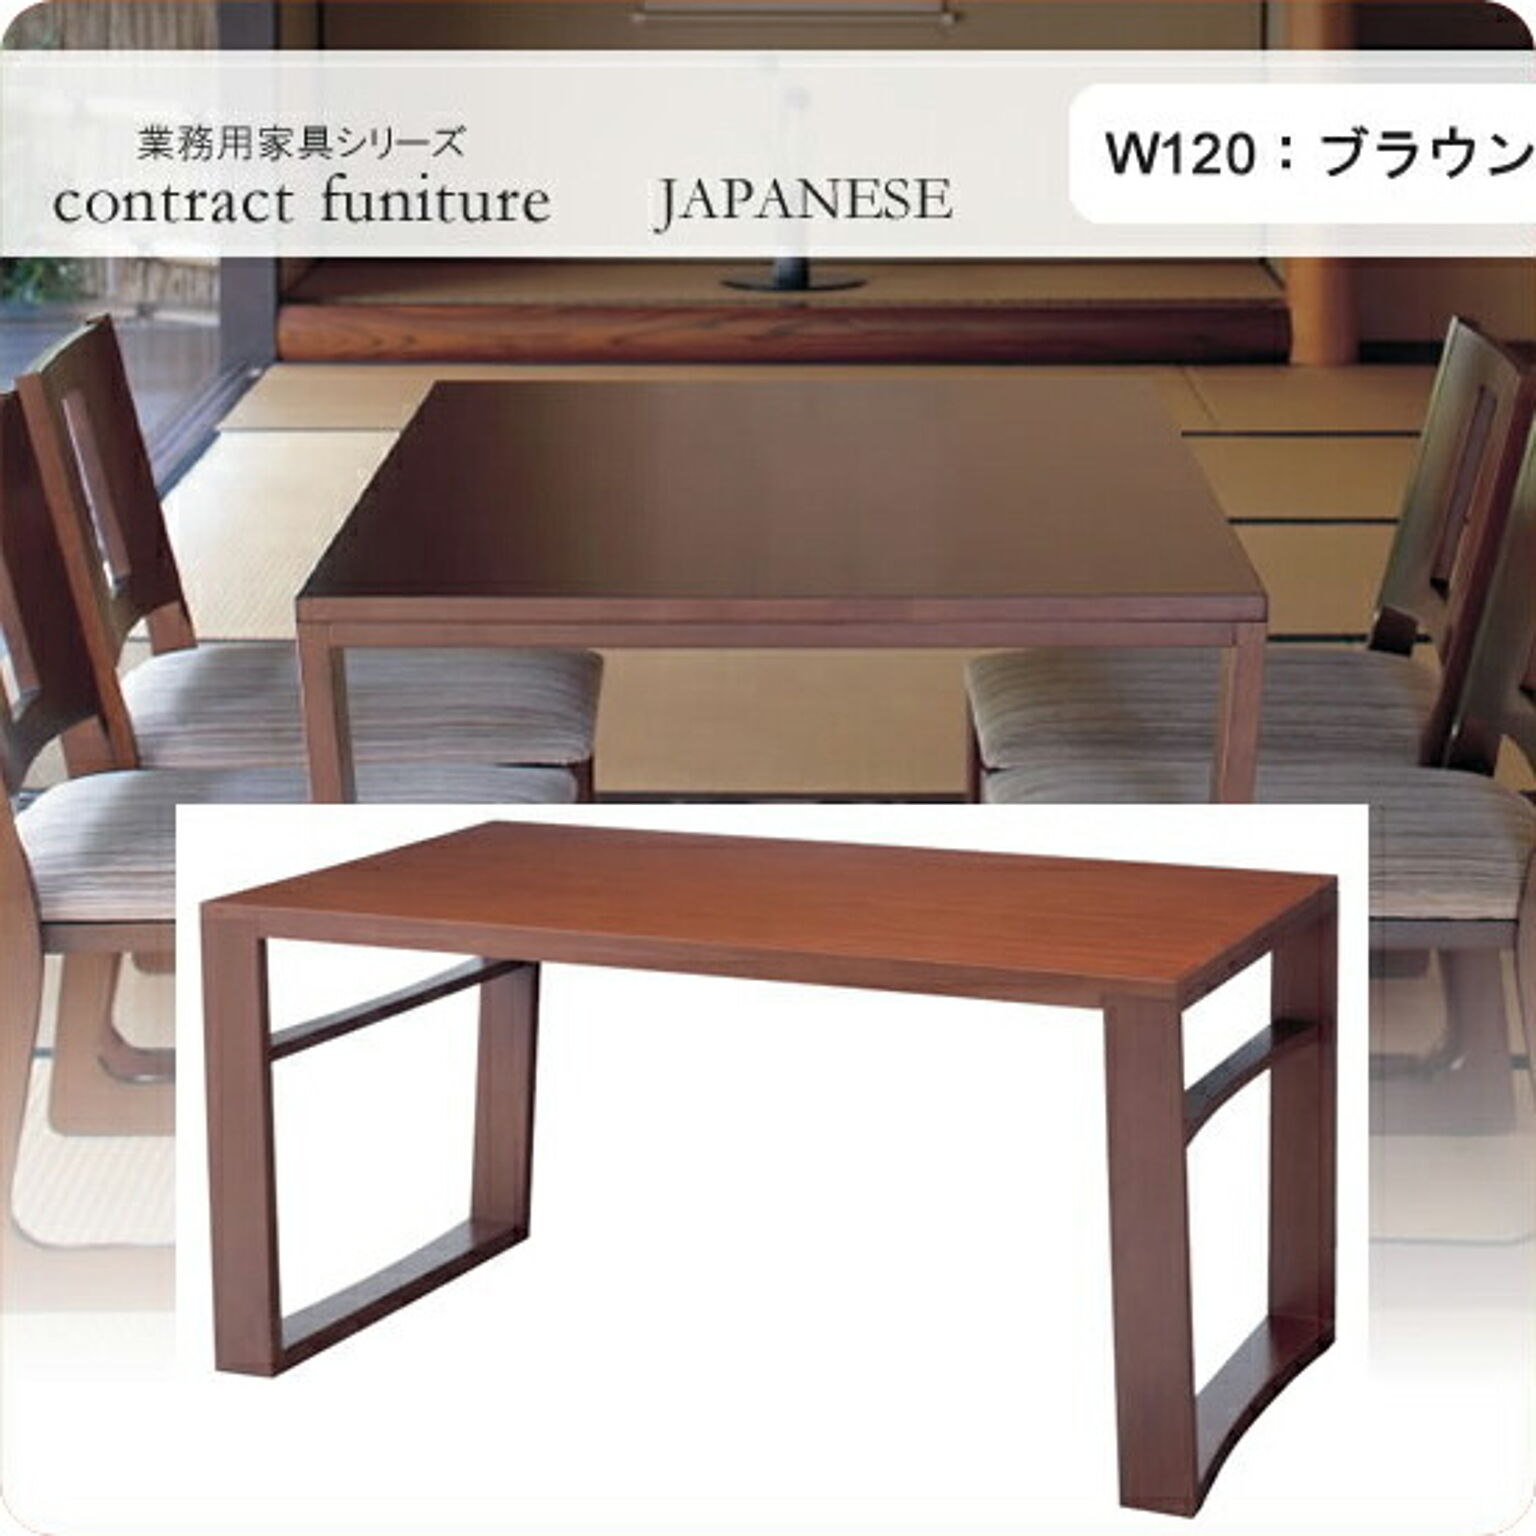 ダイニングテーブル 120 羽戸山 ブラウン 業務用家具シリーズ JAPANESE（ジャパニーズ）  店舗 施設 コントラクト